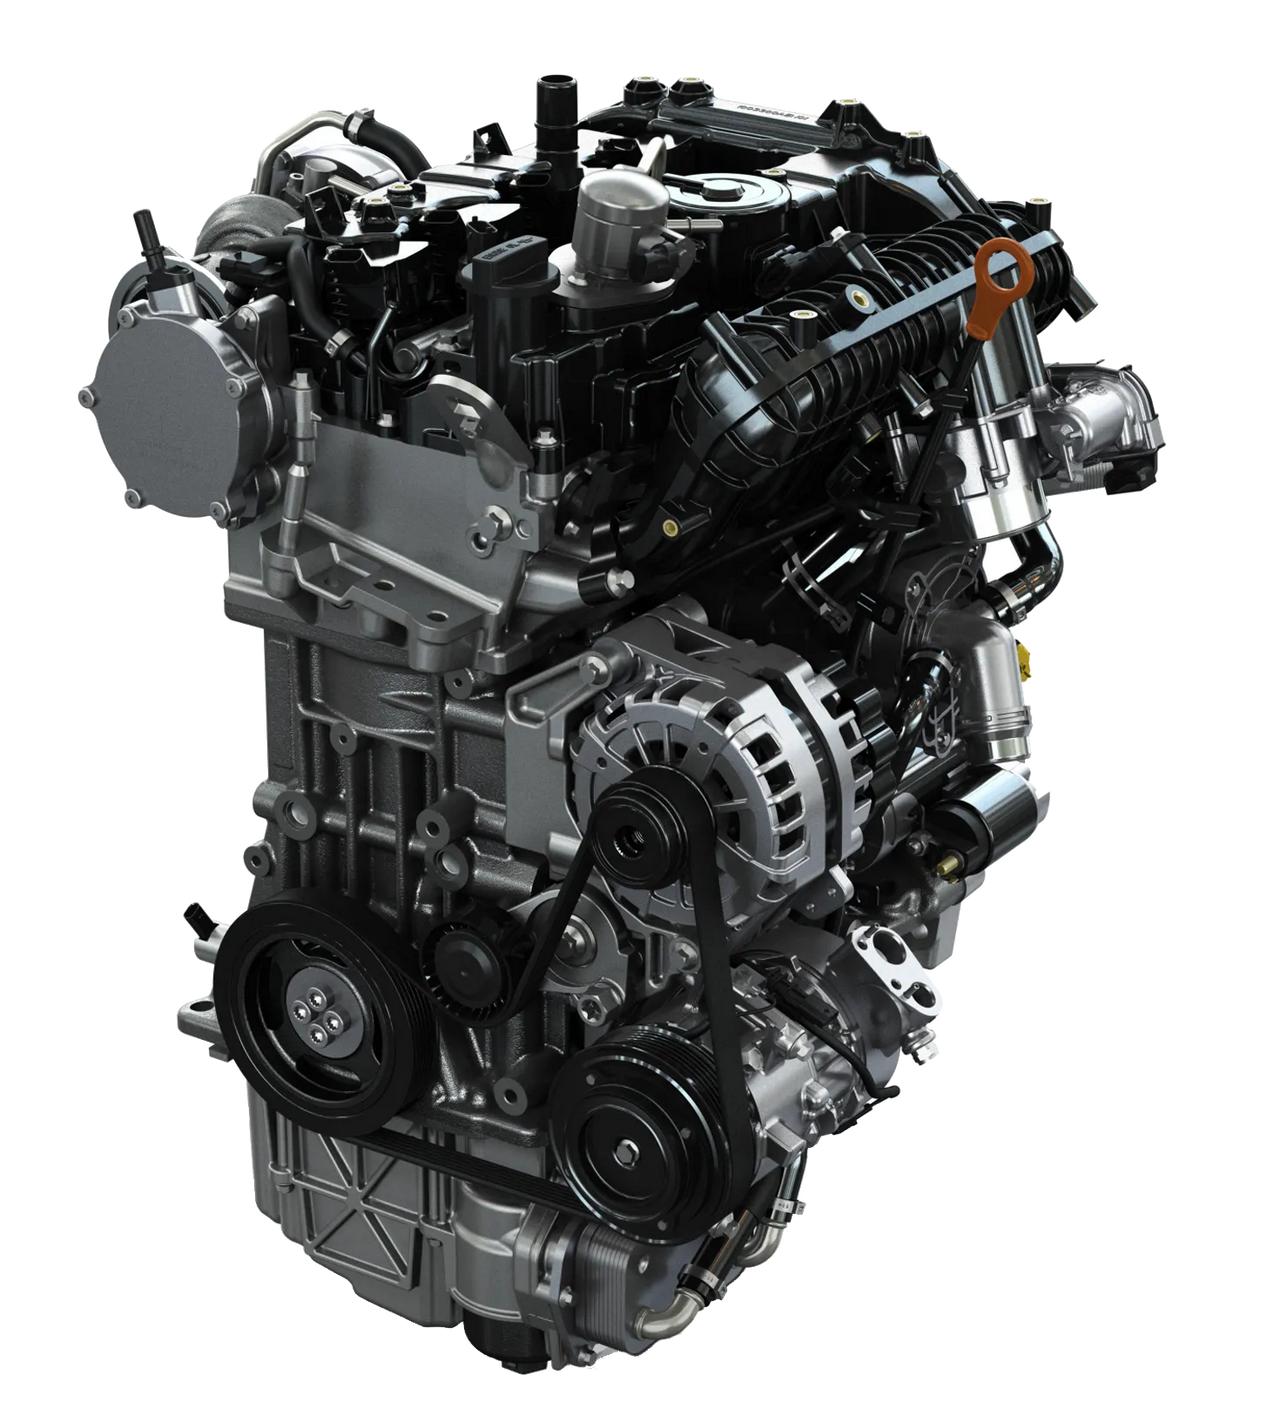 0t汽油发动机现在有三种调教了,不同的功率和扭矩 1